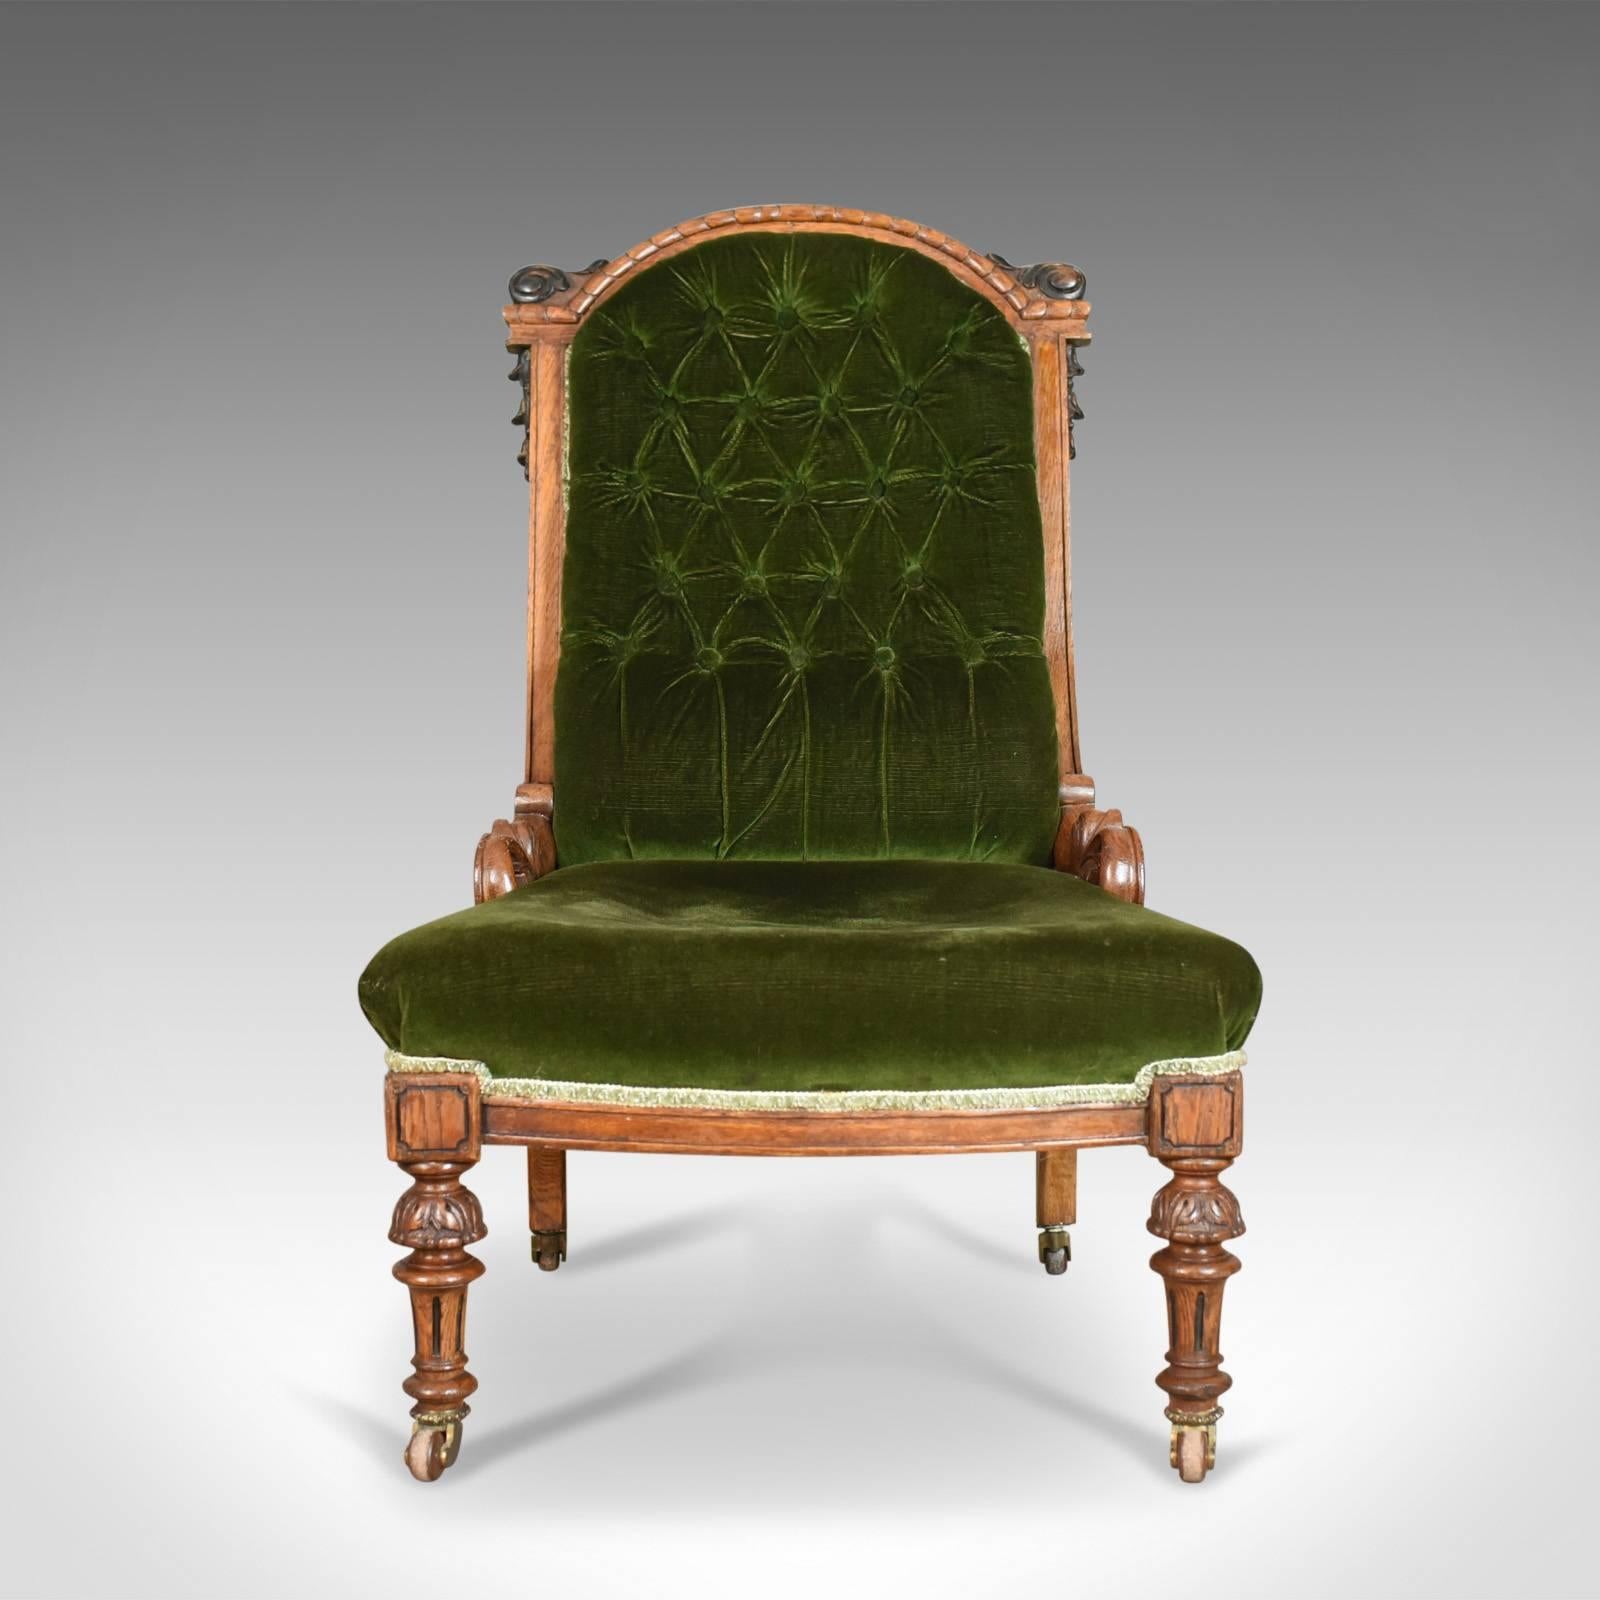 Dies ist ein antiker Stuhl:: eine schottische Eiche Knopf zurück Pflege oder Salon:: Stuhl aus der frühen viktorianischen Ära:: ca. 1850. 

Attraktiver Kontrast zwischen dem dunklen:: smaragdgrünen Stoff und dem Eichenholzrahmen
Wünschenswerte::